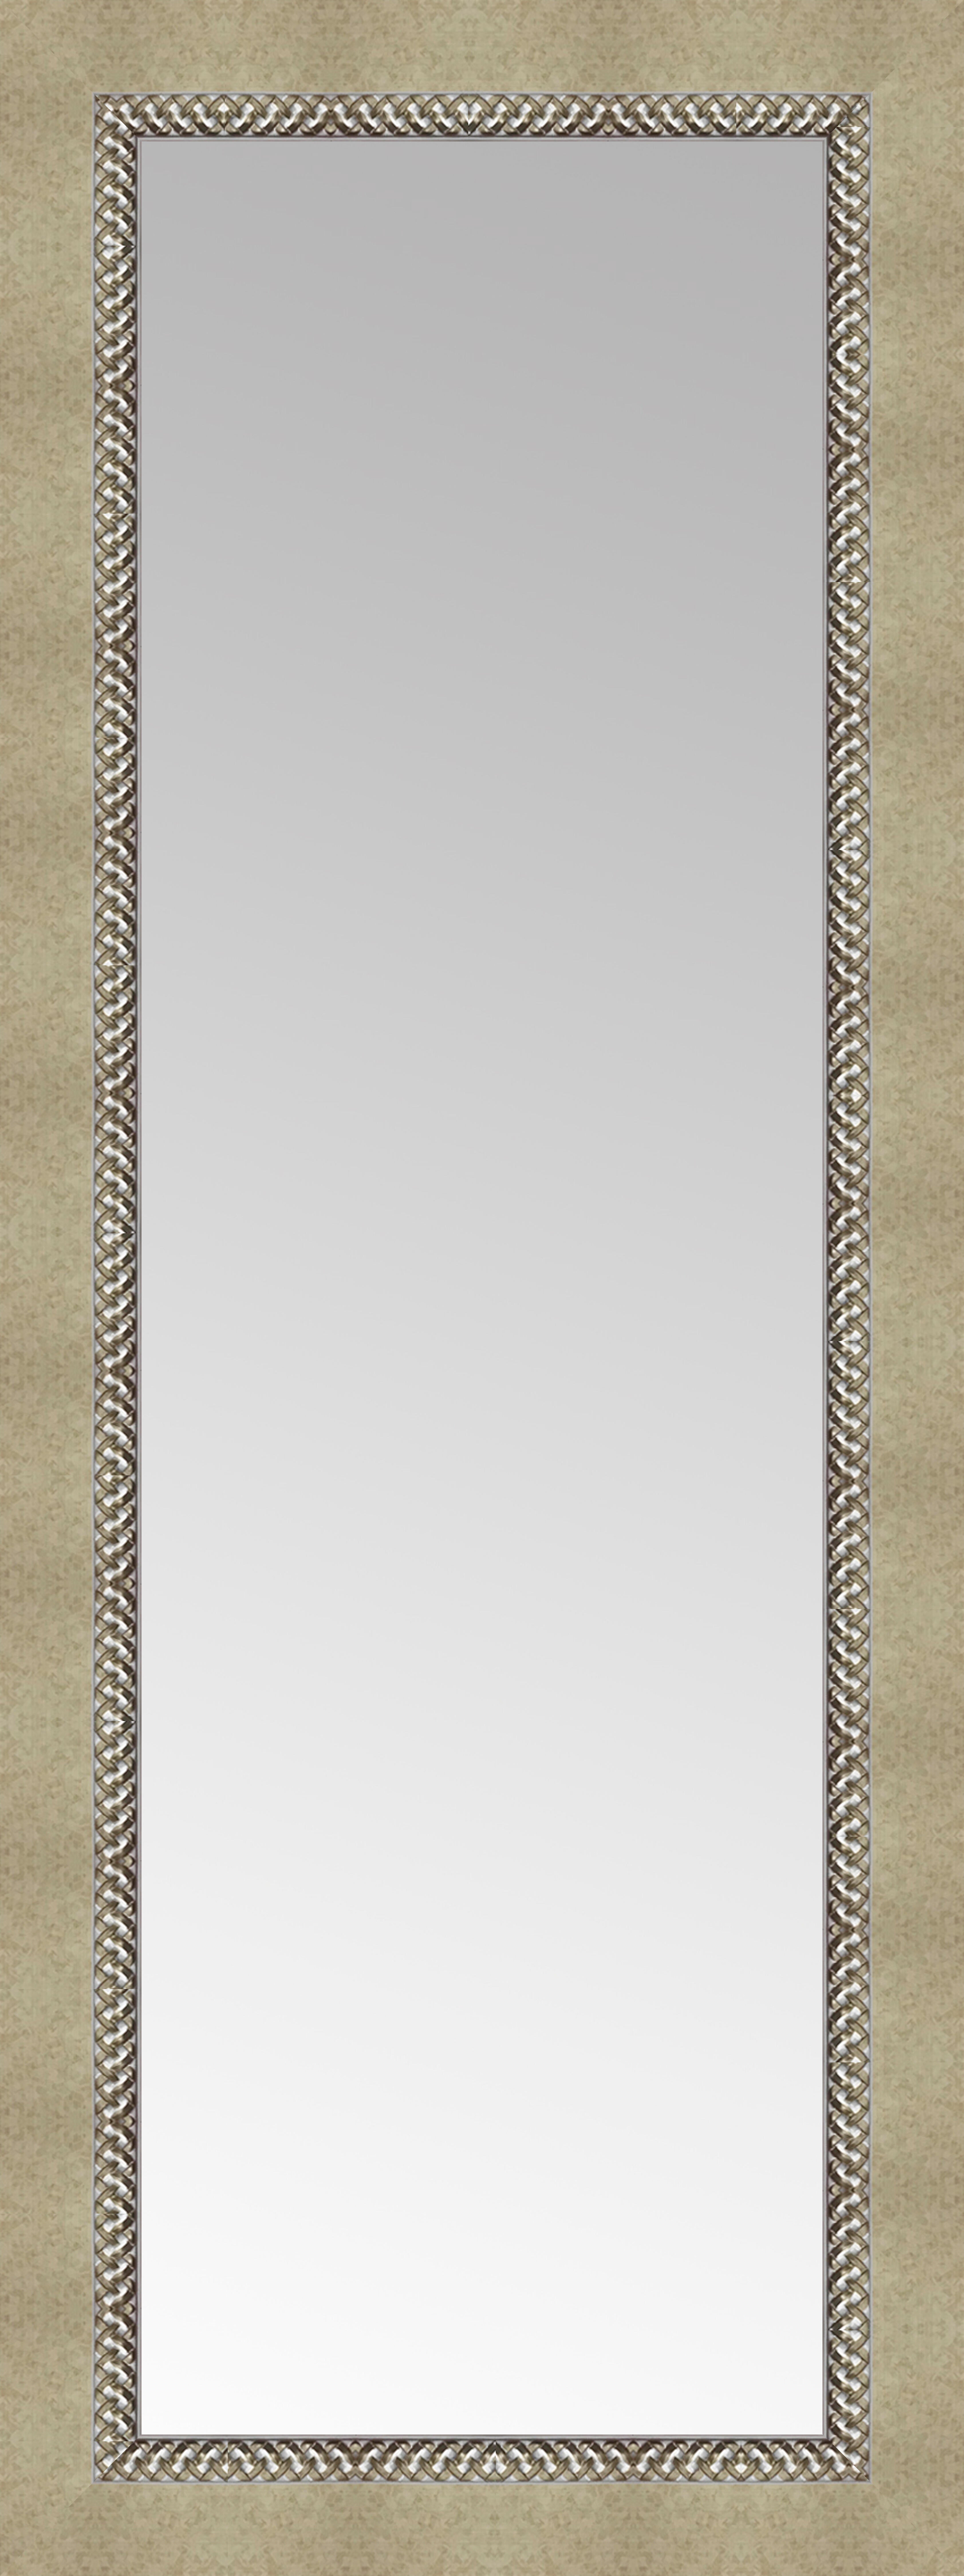 Espejo enmarcado xxl alhambra oro 170 x 70 cm